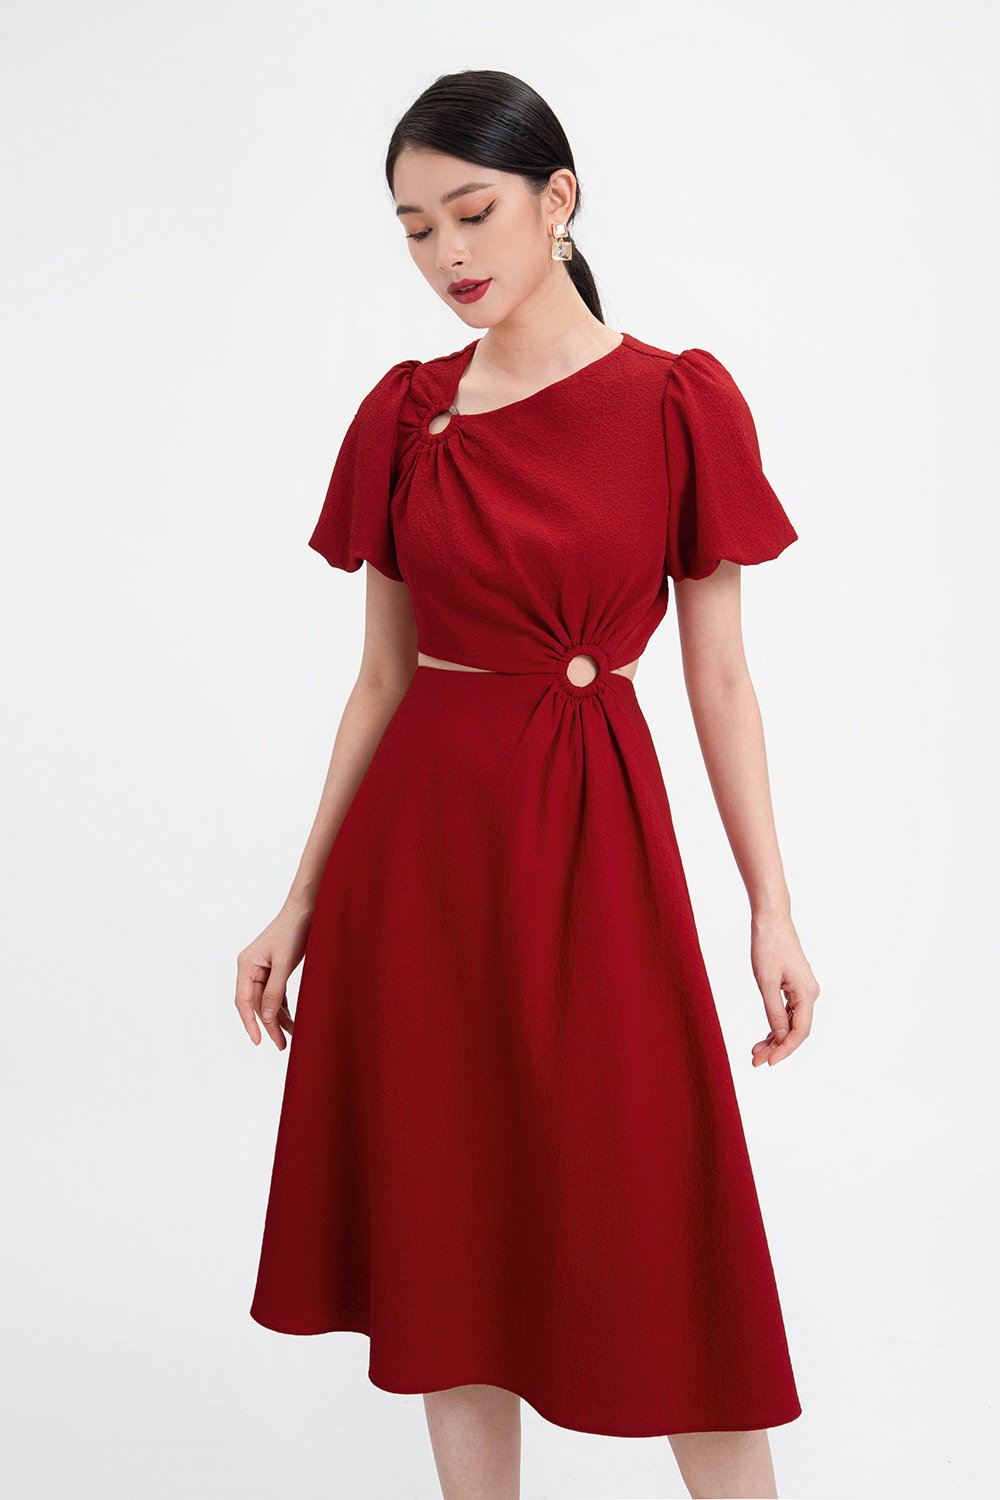 Đầm xòe dự tiệc màu đỏ eo cutout HL1720  Thời trang công sở KK Fashion